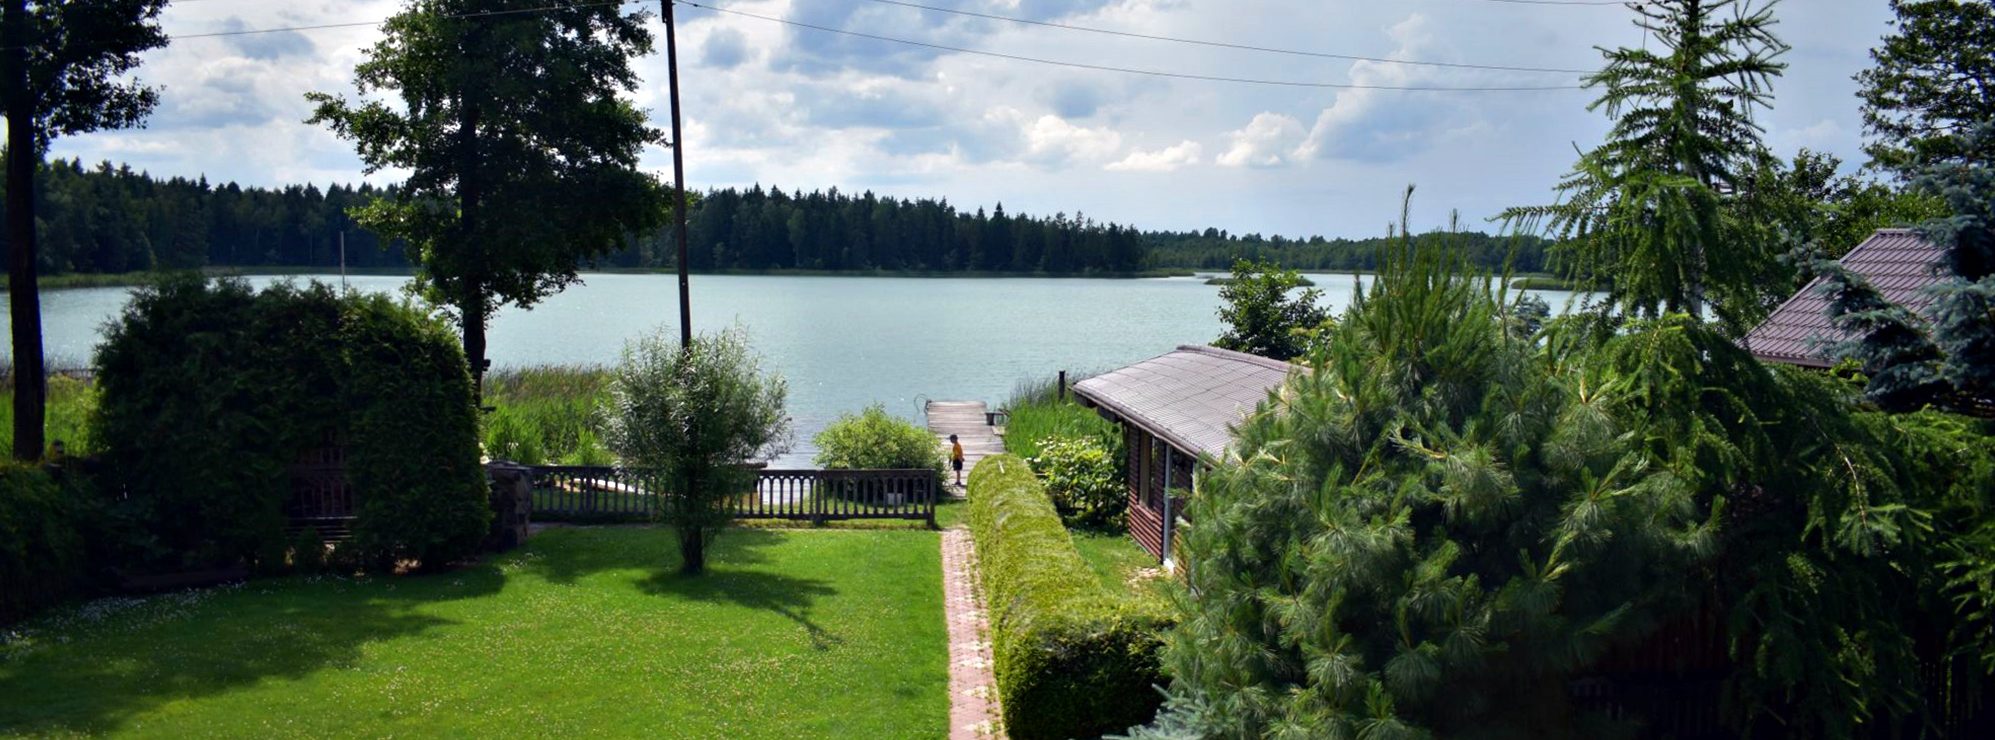 Suwalszczyzna.net: agroturystyka, domki nad jeziorem.